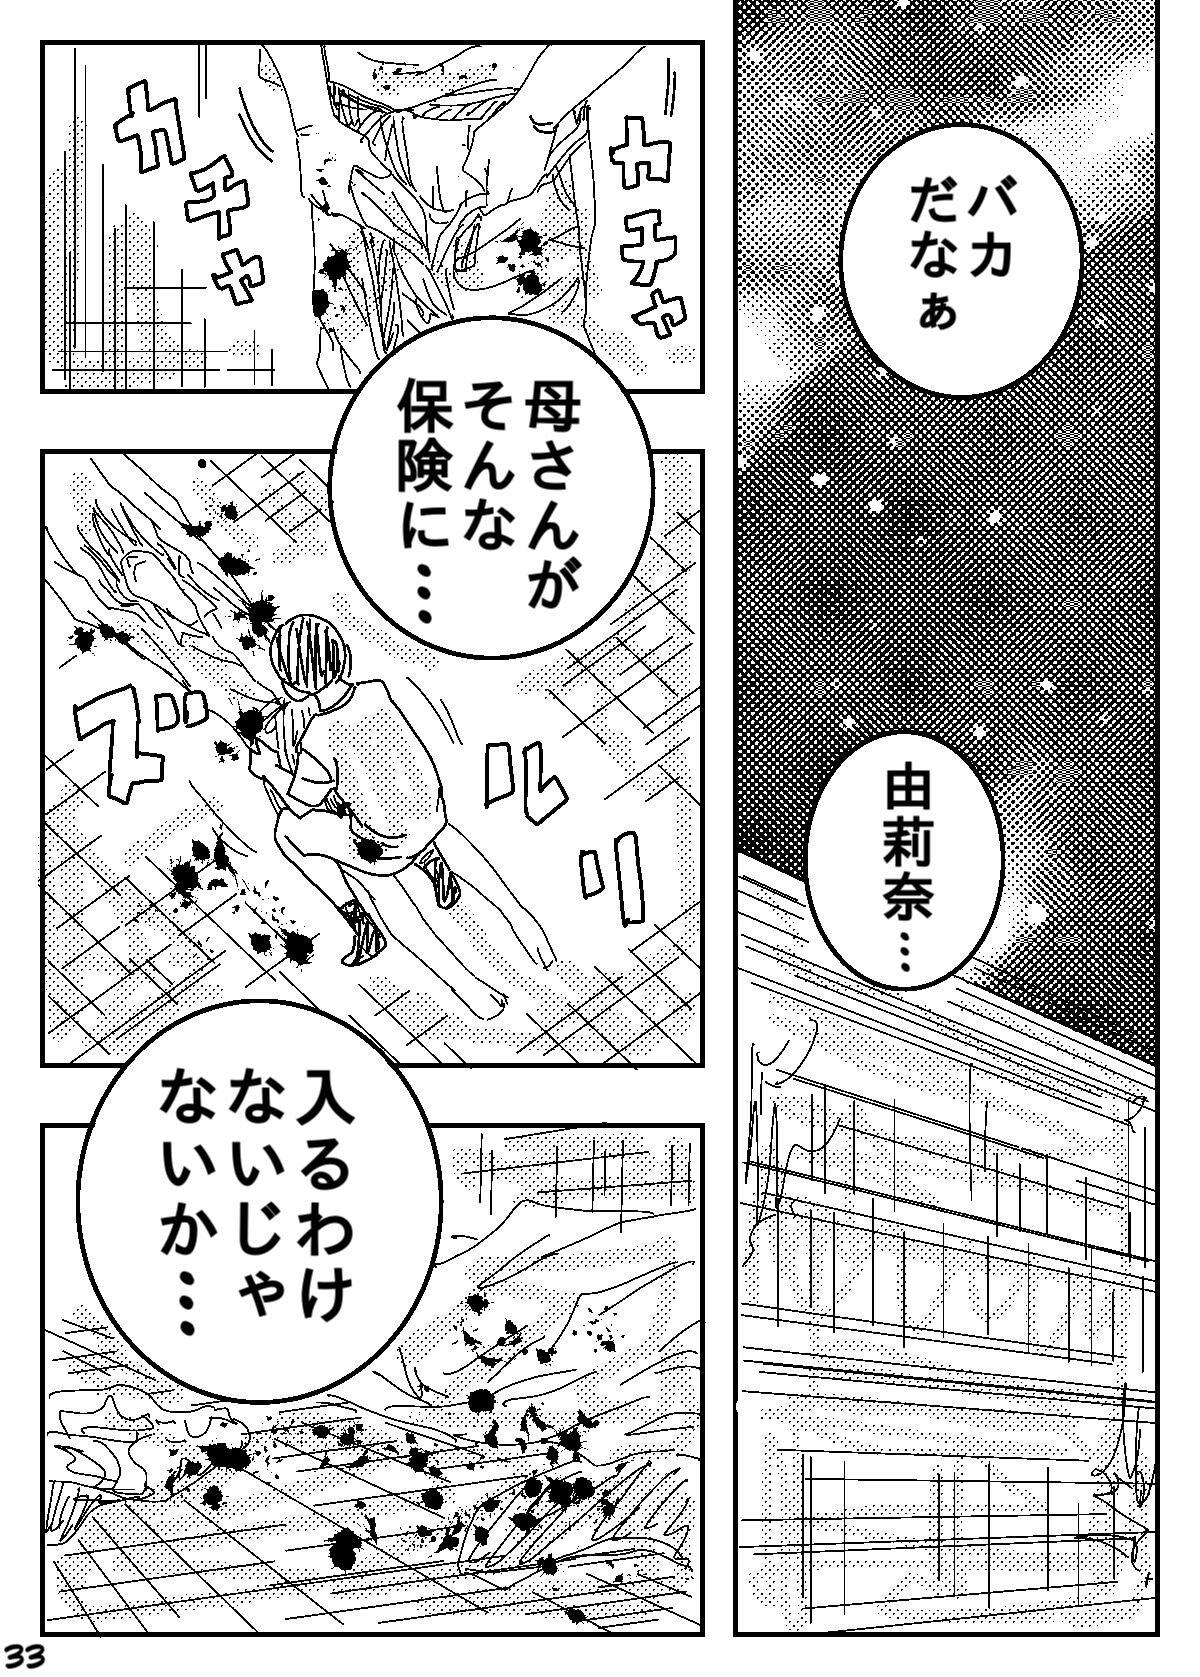 Teensnow Gesu no Kiwami Kazoku Masterbation - Page 33